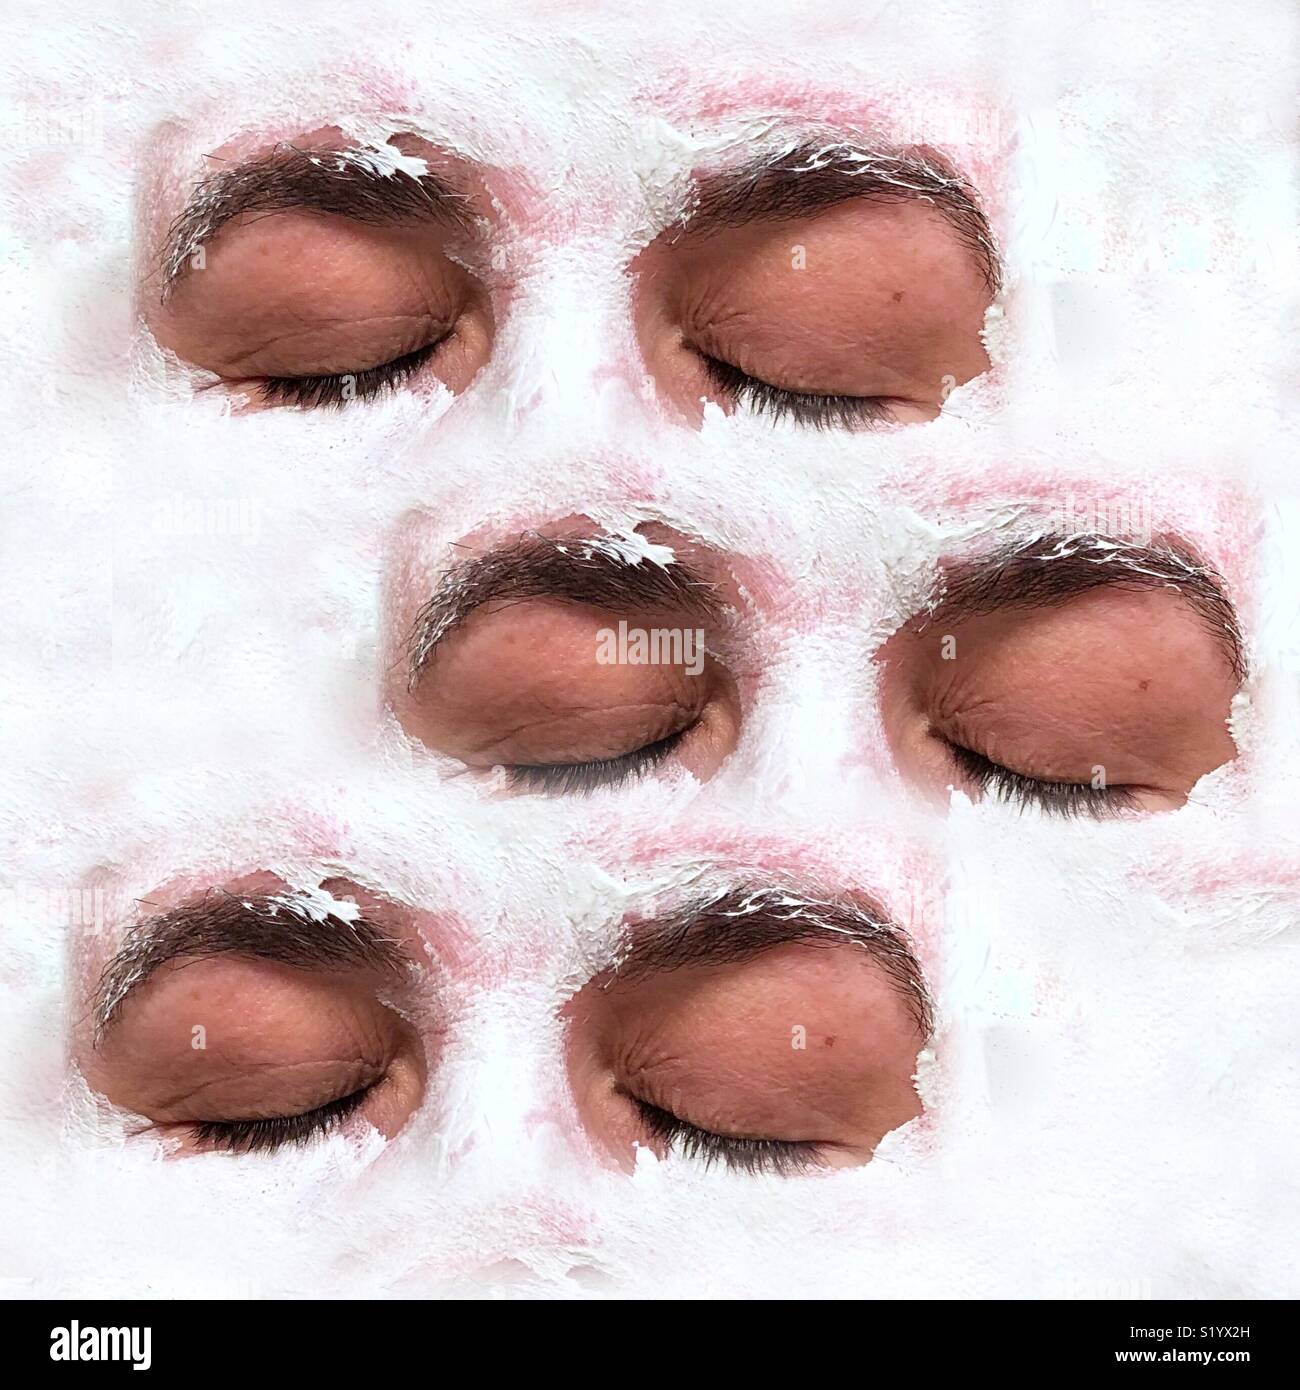 Un résumé de l'image artistique de trois ensembles de fermé les yeux sur un visage recouvert d'un masque de boue argile blanche Banque D'Images